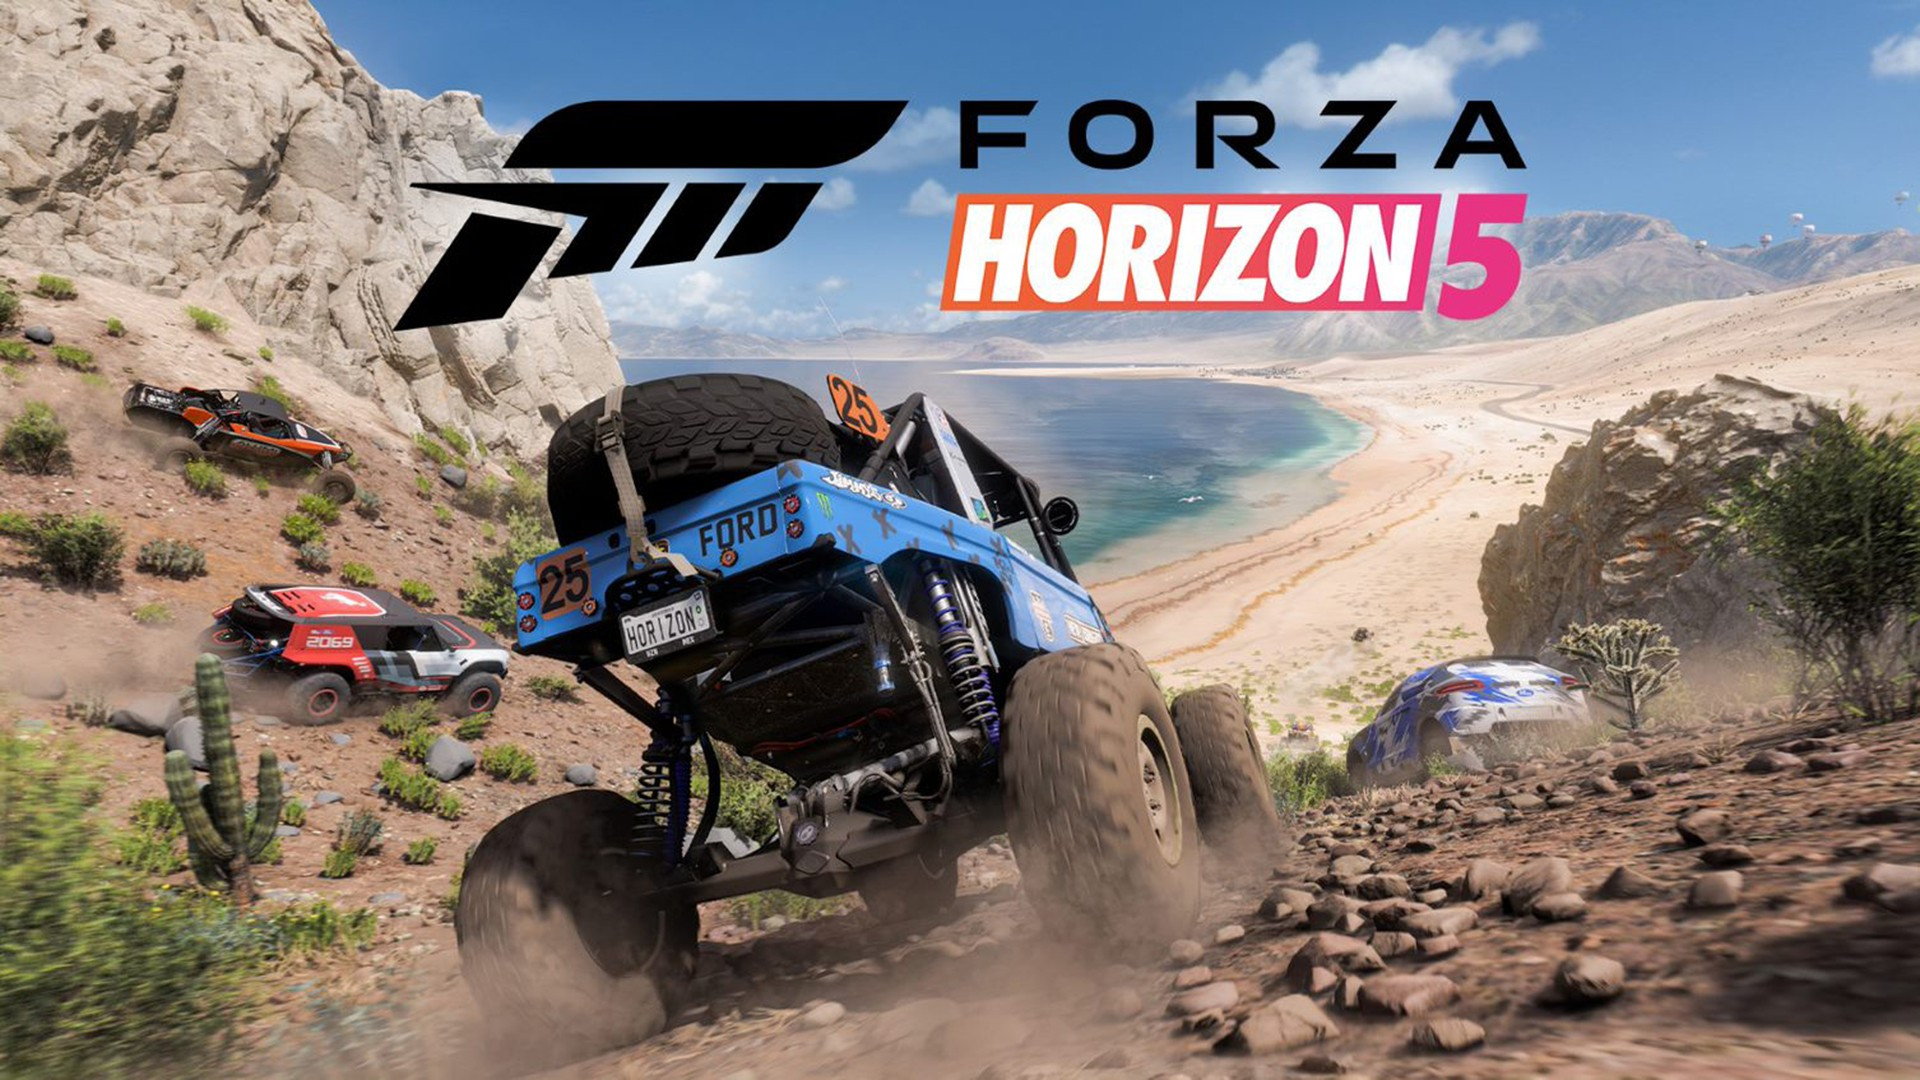 Forza Horizon 5 Resmi Diumumkan, Ini Tanggal Rilisnya – Sukaon.com